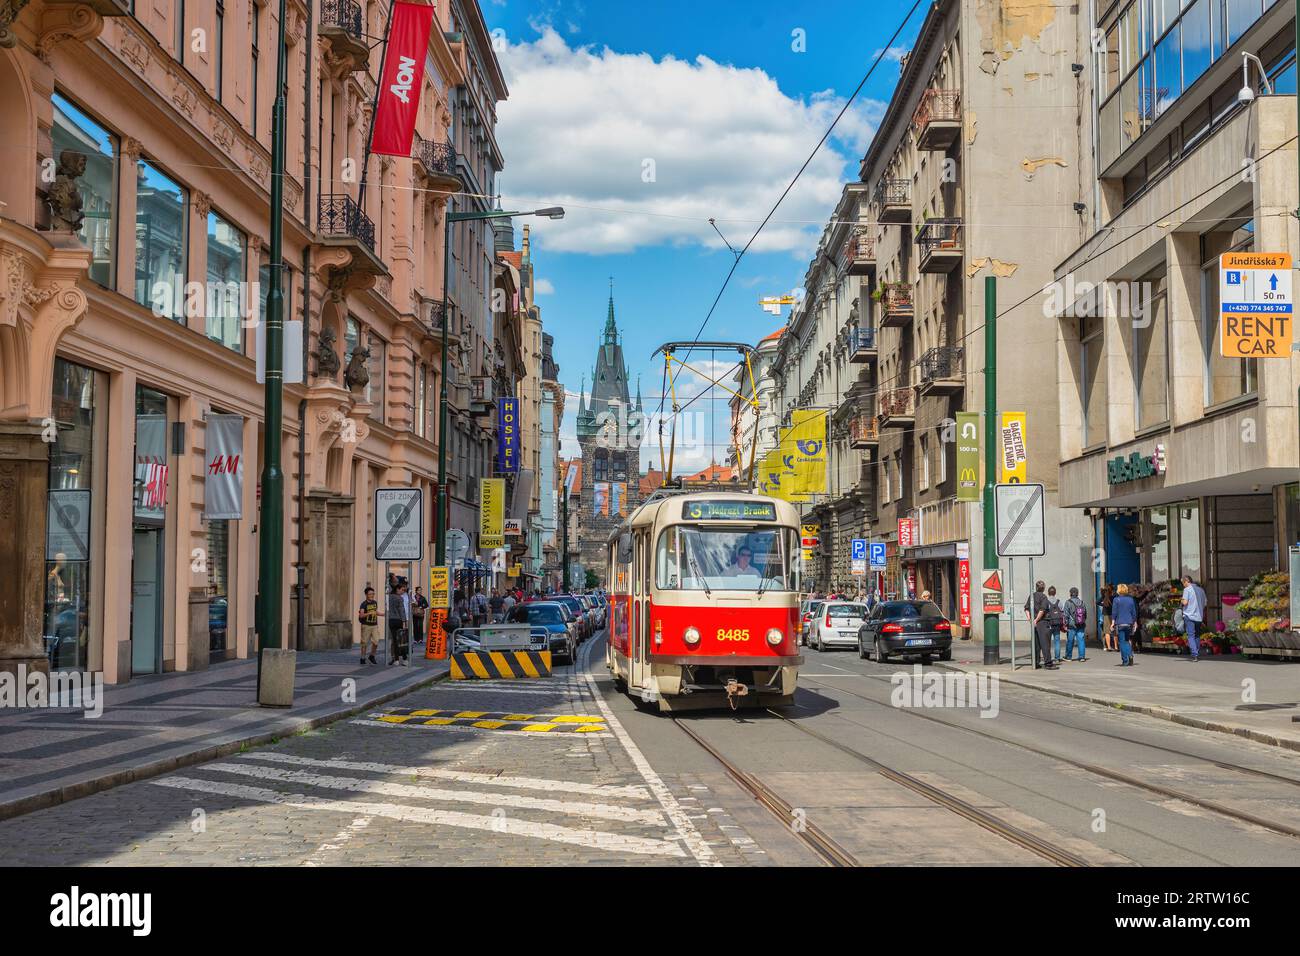 Prague République tchèque - 28 juin 2015 : Prague République tchèque, Tram près de la place de la vieille ville de Prague, Tchéquie Banque D'Images